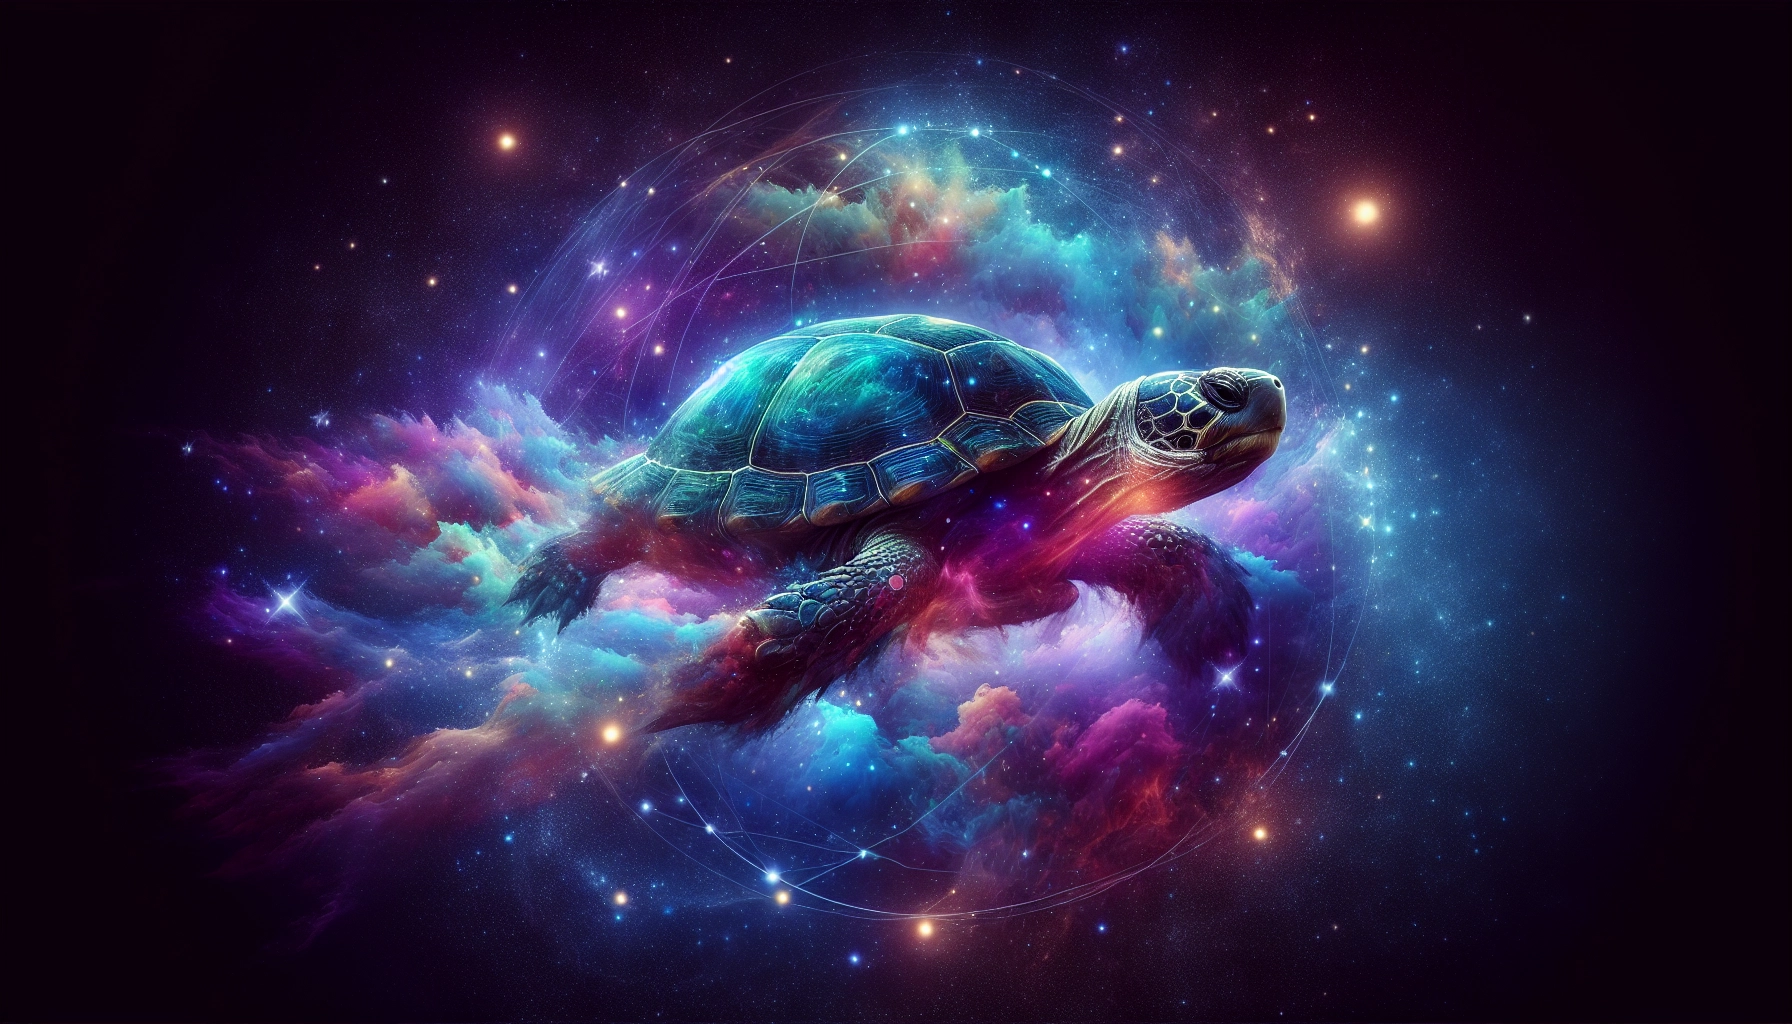 tortuga en un viaje cosmico simbolico.webp